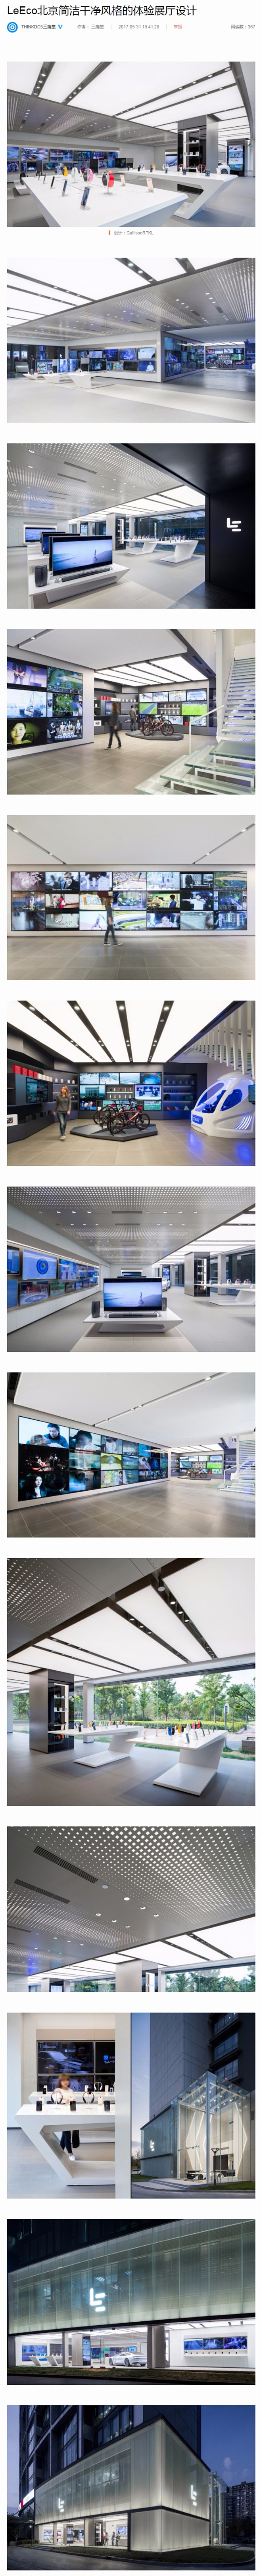 LeEco北京简洁干净风格的体验展厅设计